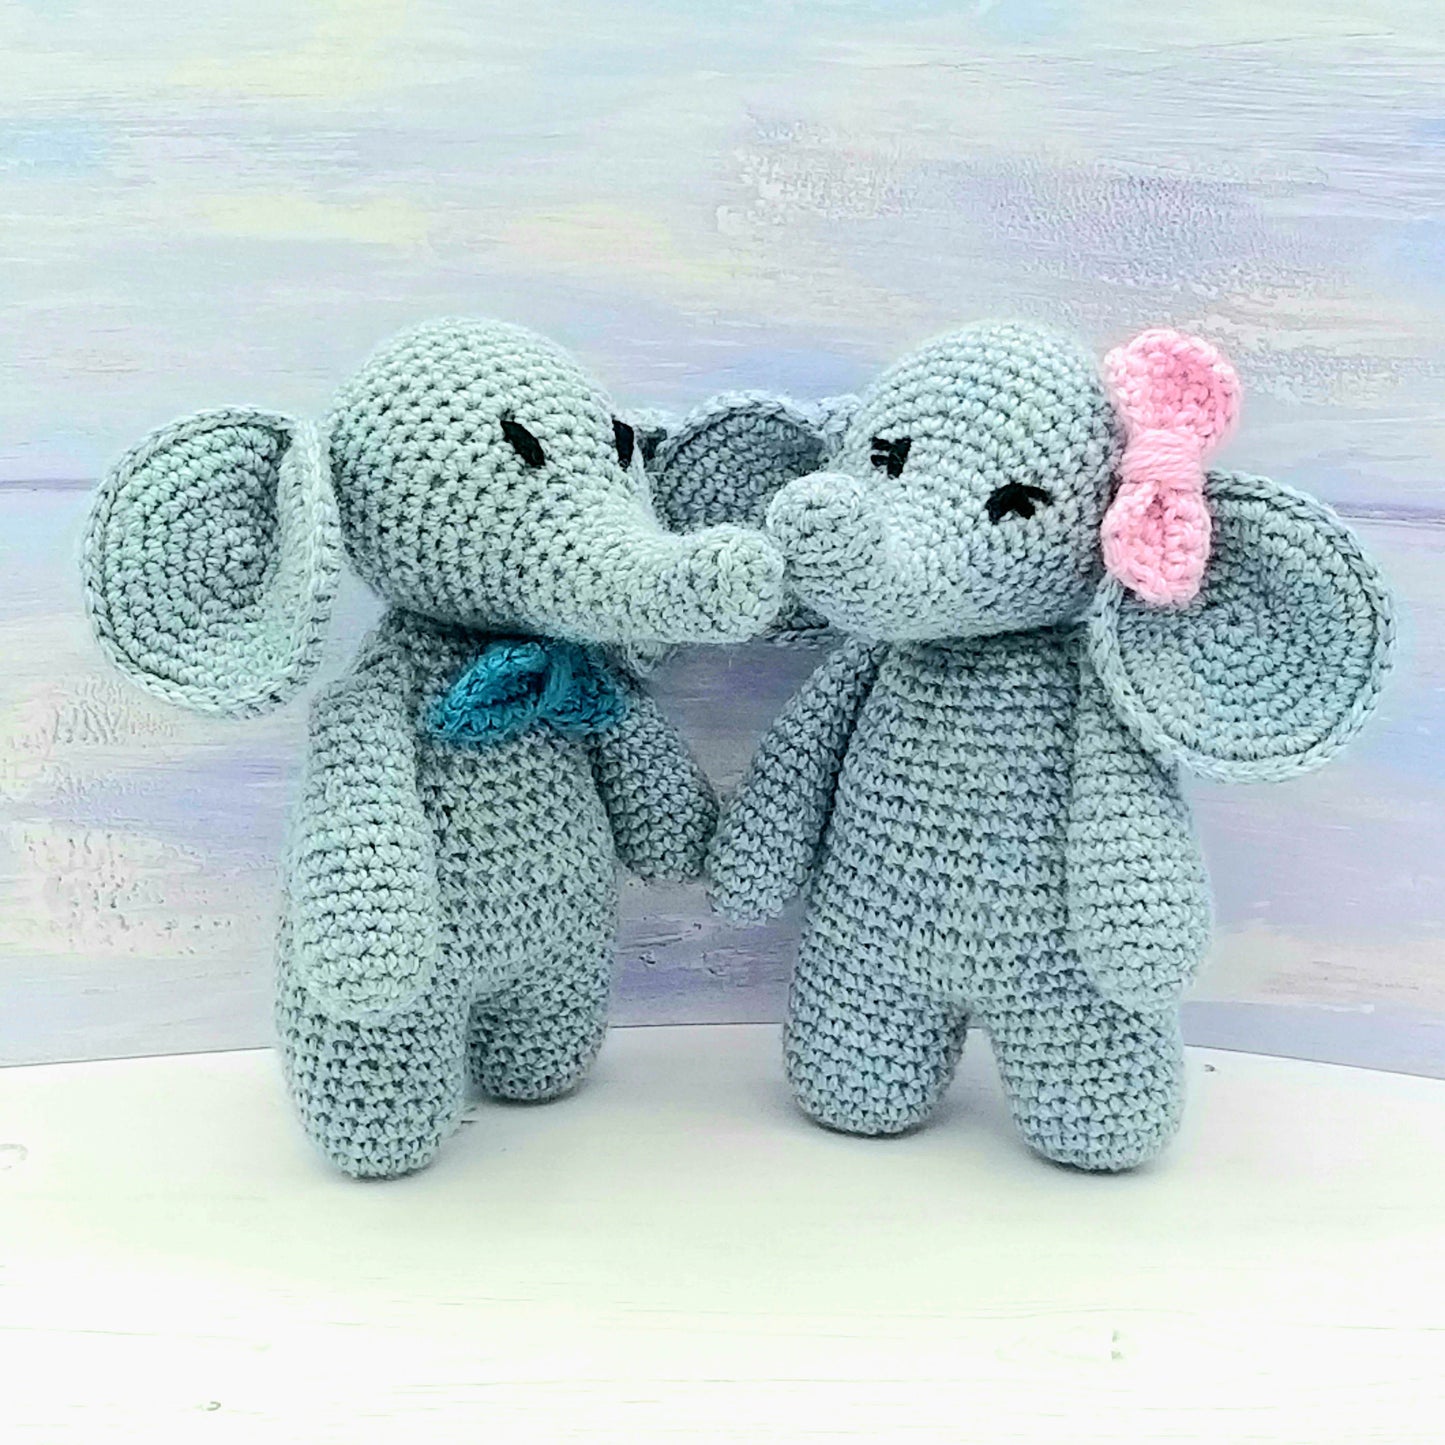 Crochet Toy Elephants - Eli & Ela